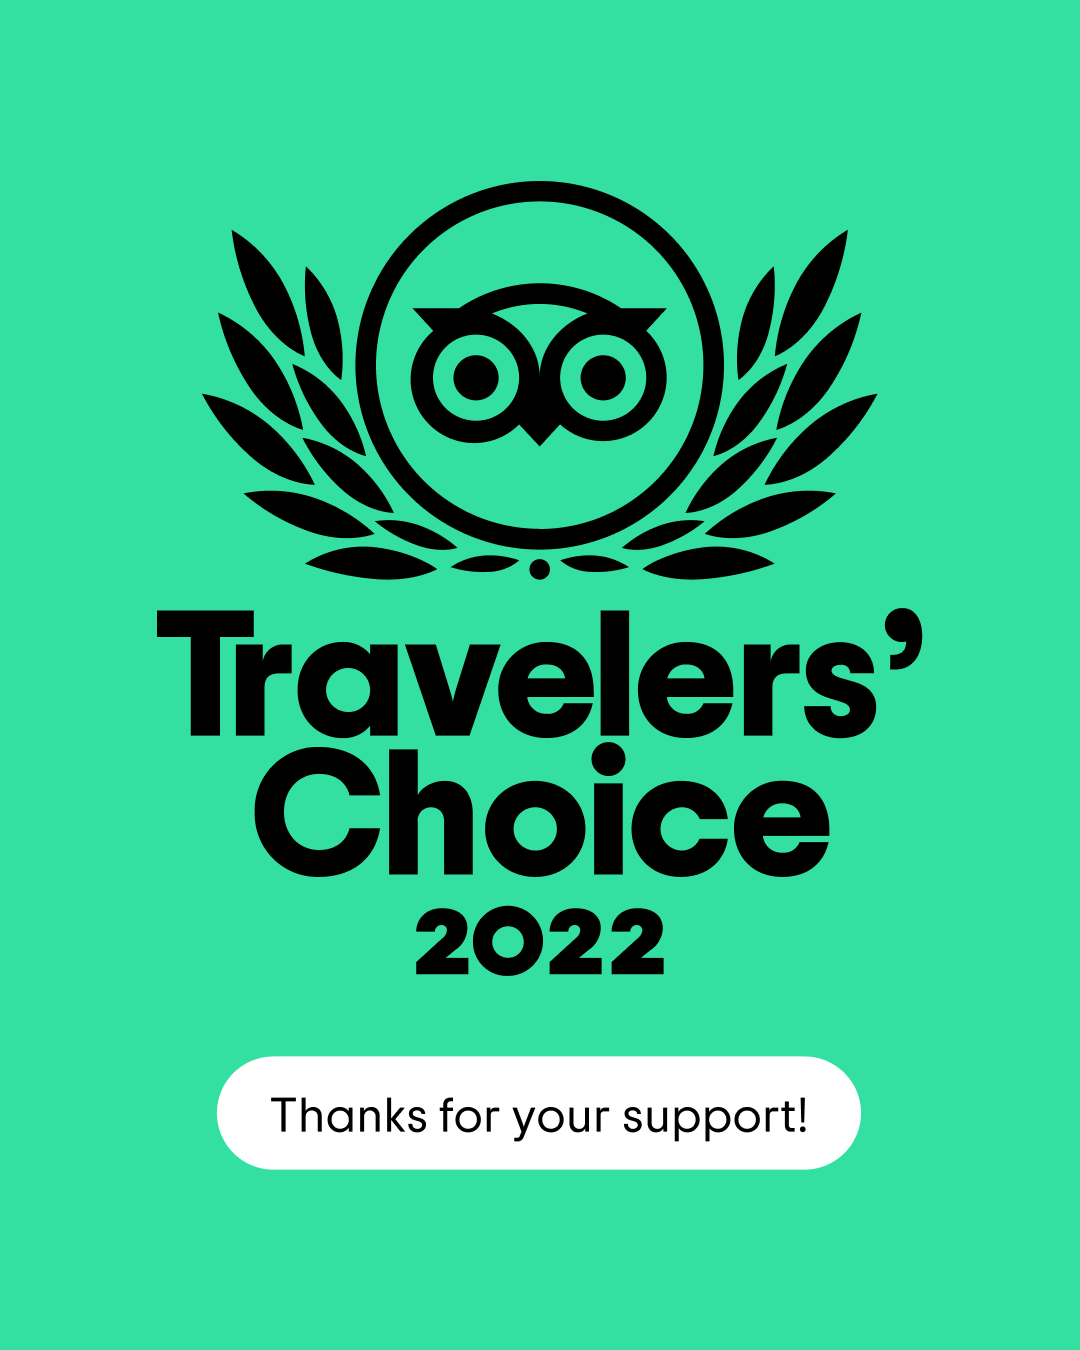 Trip Adivisor's Traveler's Choice 2022